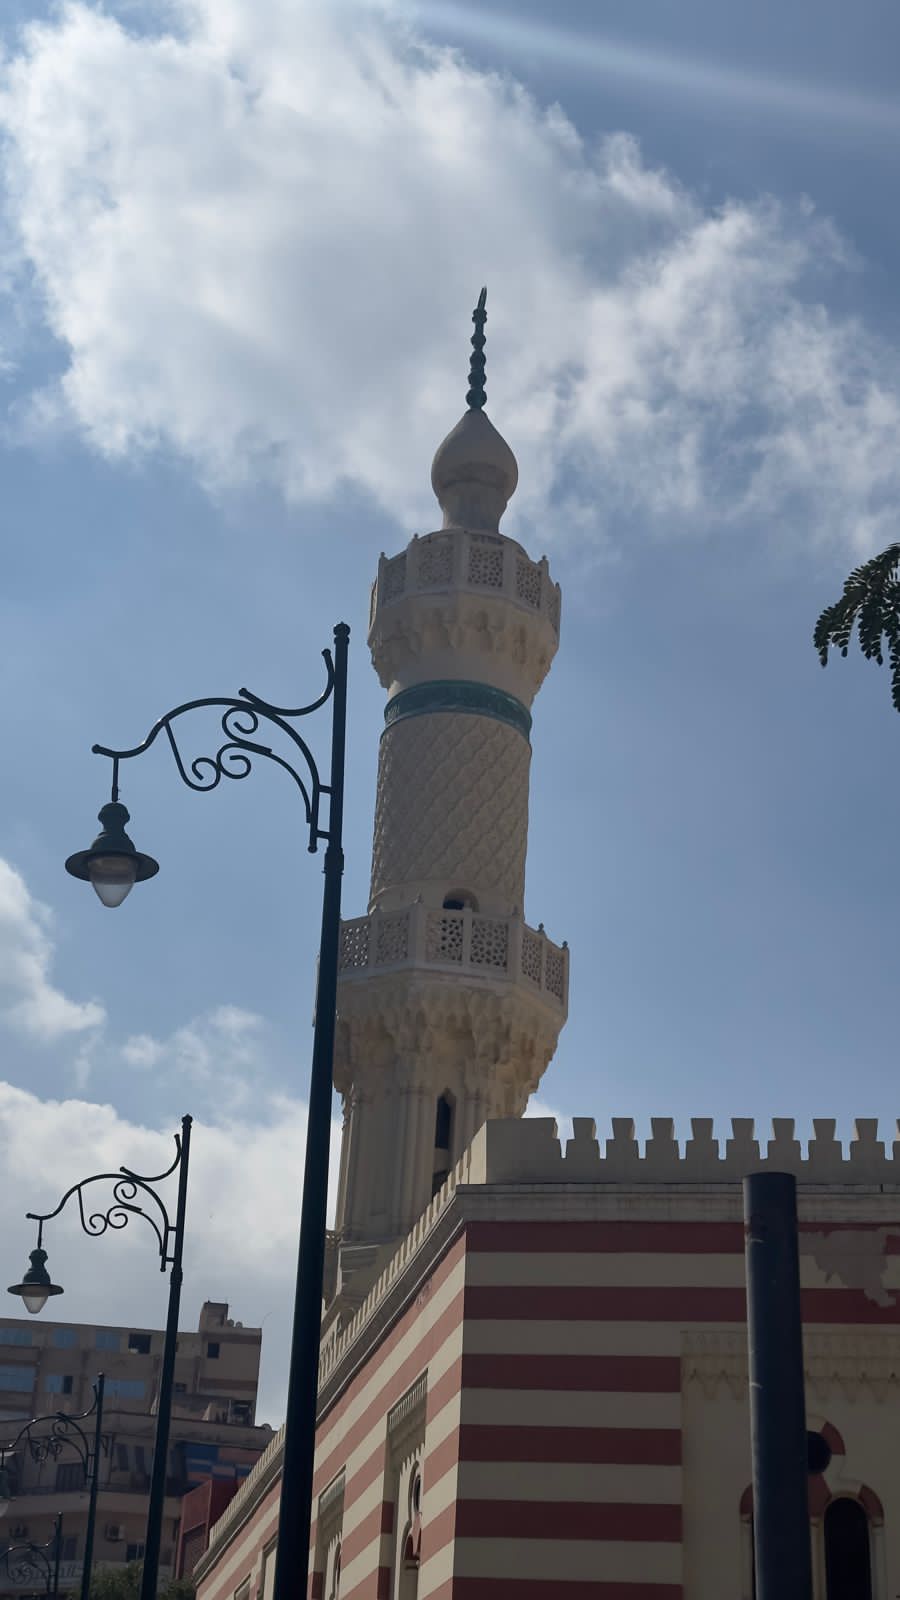 مئذنة المسجد